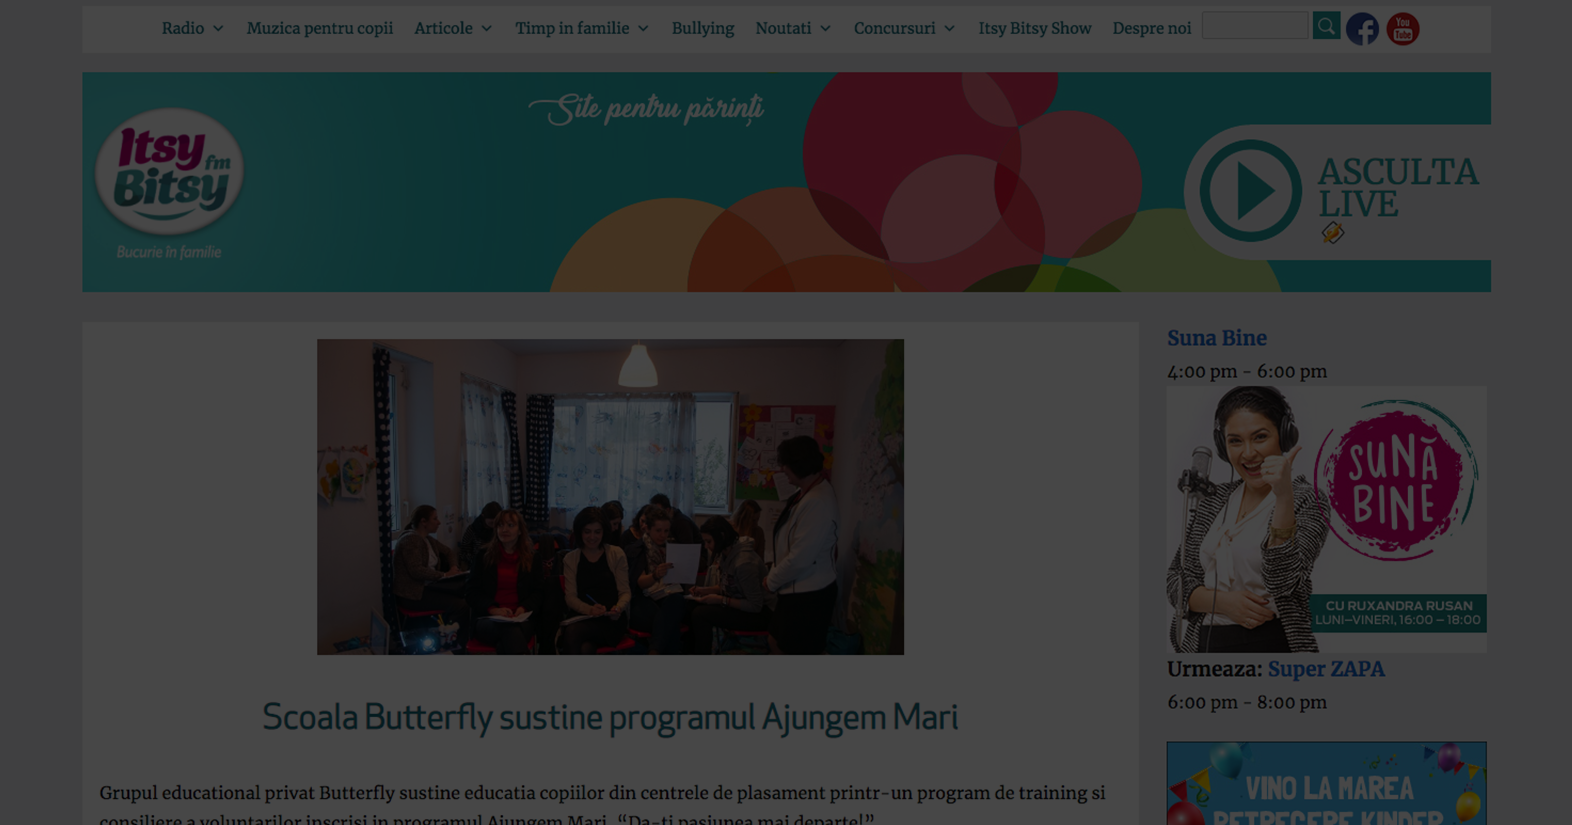 Grupul educational privat Butterfly sustine educatia copiilor